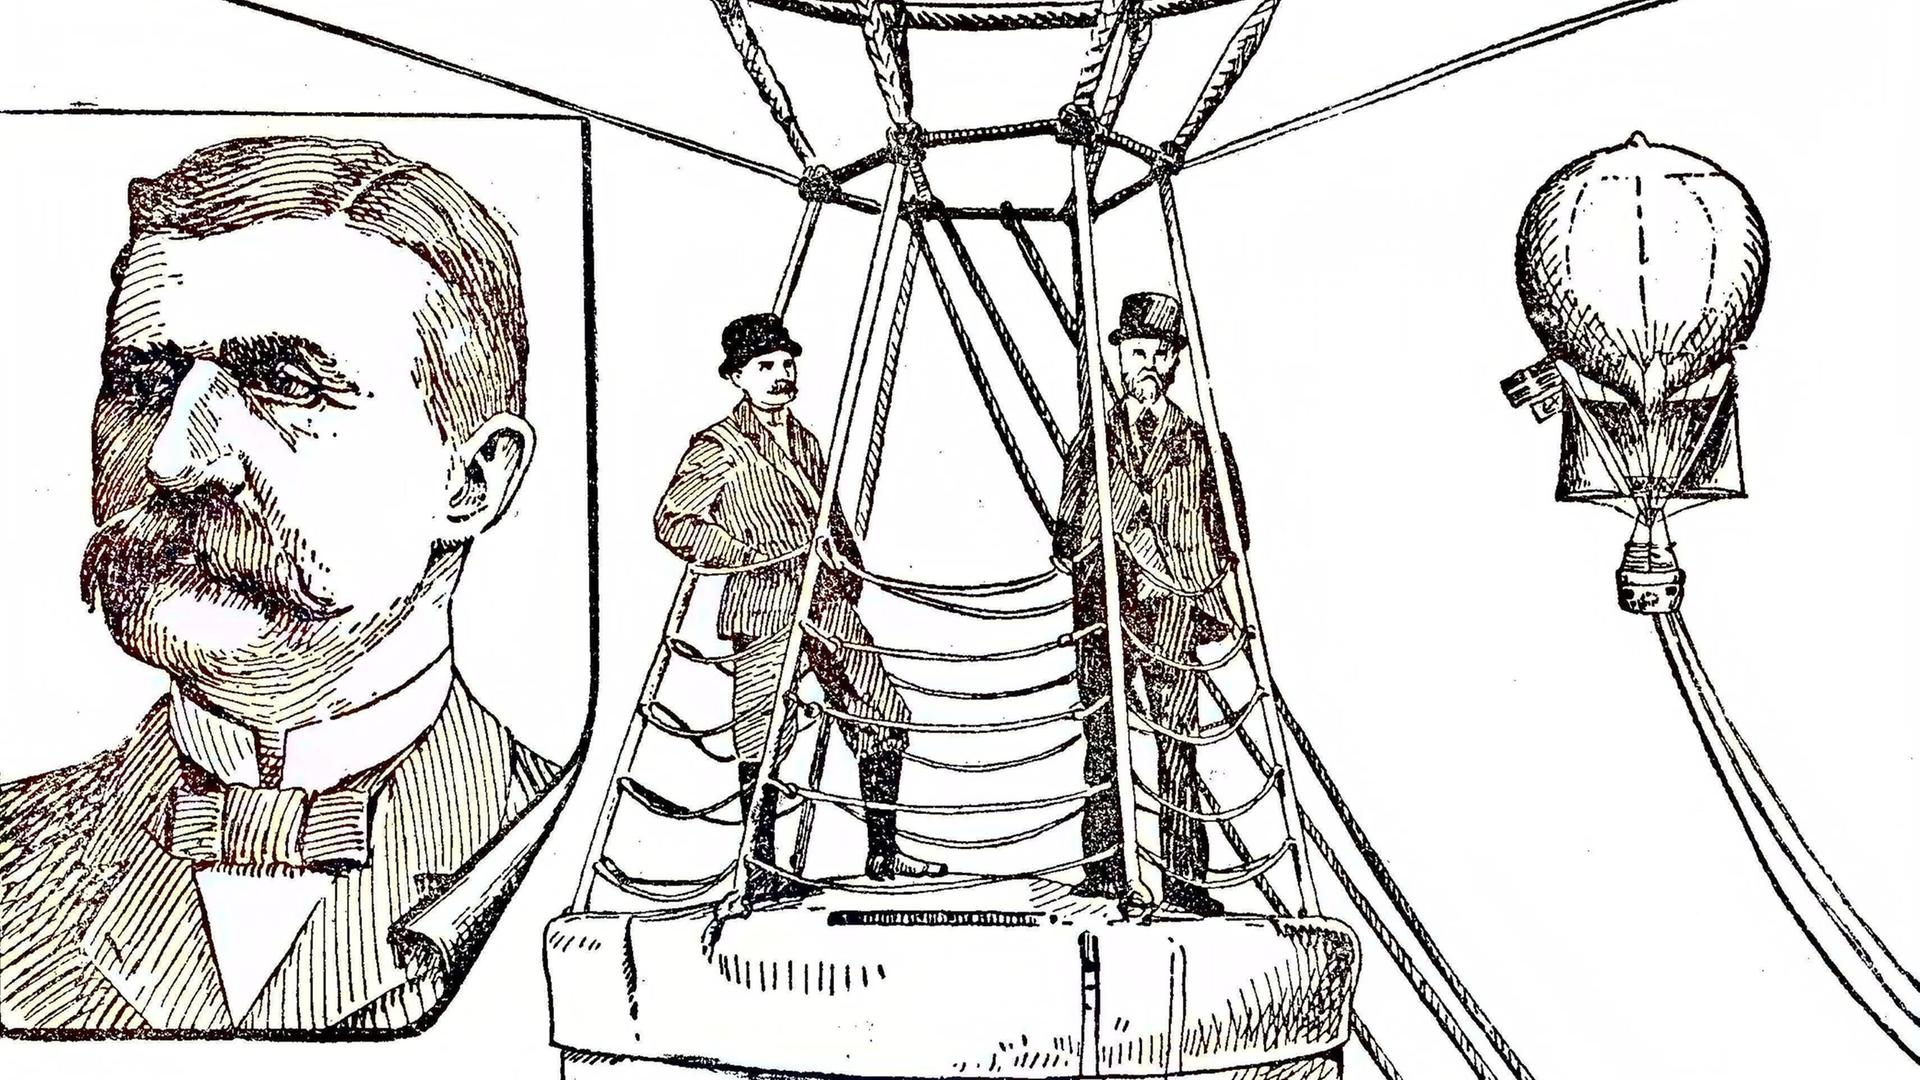 Salomon August Andrées Polarexpedition von 1897: mit einem Gasballon zum Nordpol. Digitale Reproduktion einer Originalvorlage aus dem 19. Jahrhundert.